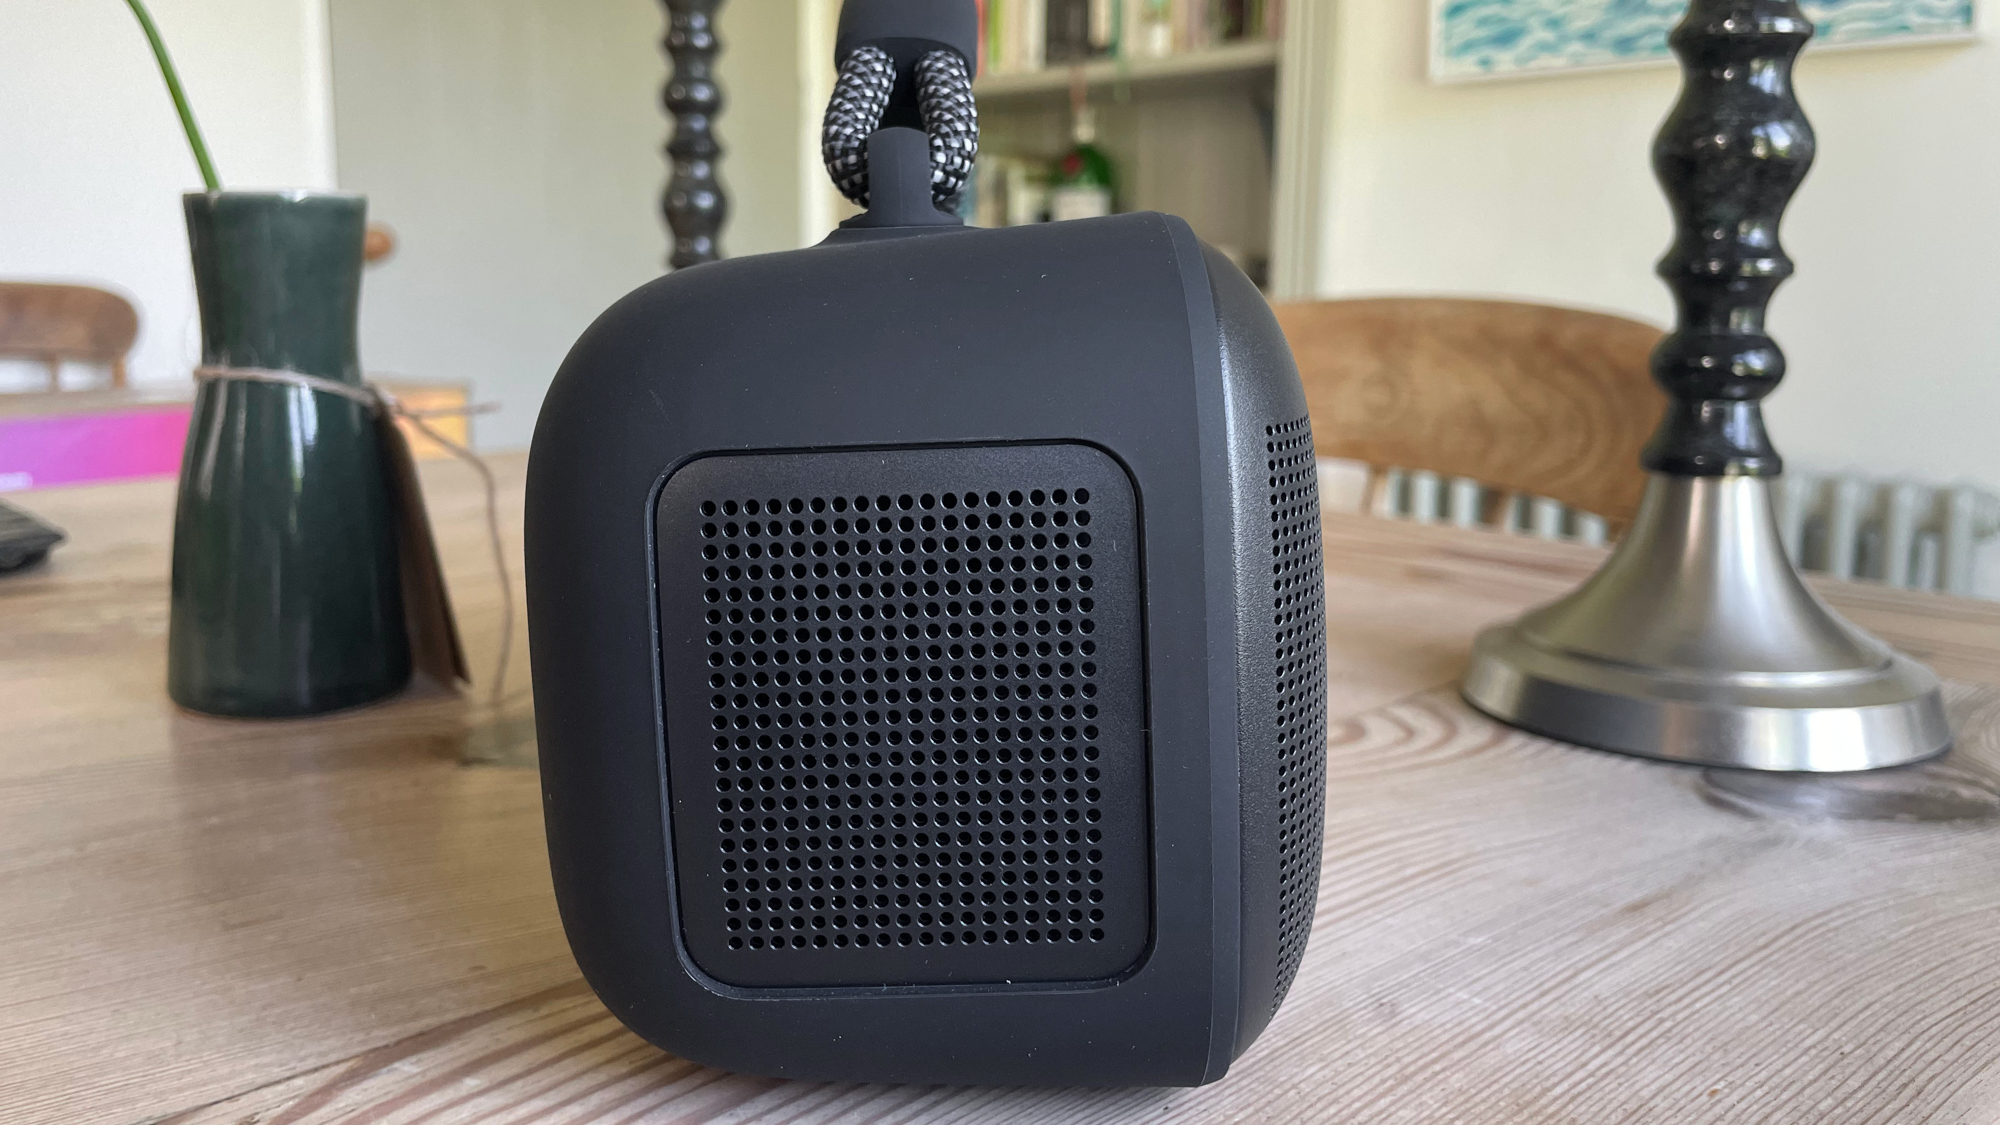 Bose SoundLink Max side profile showing speaker grille